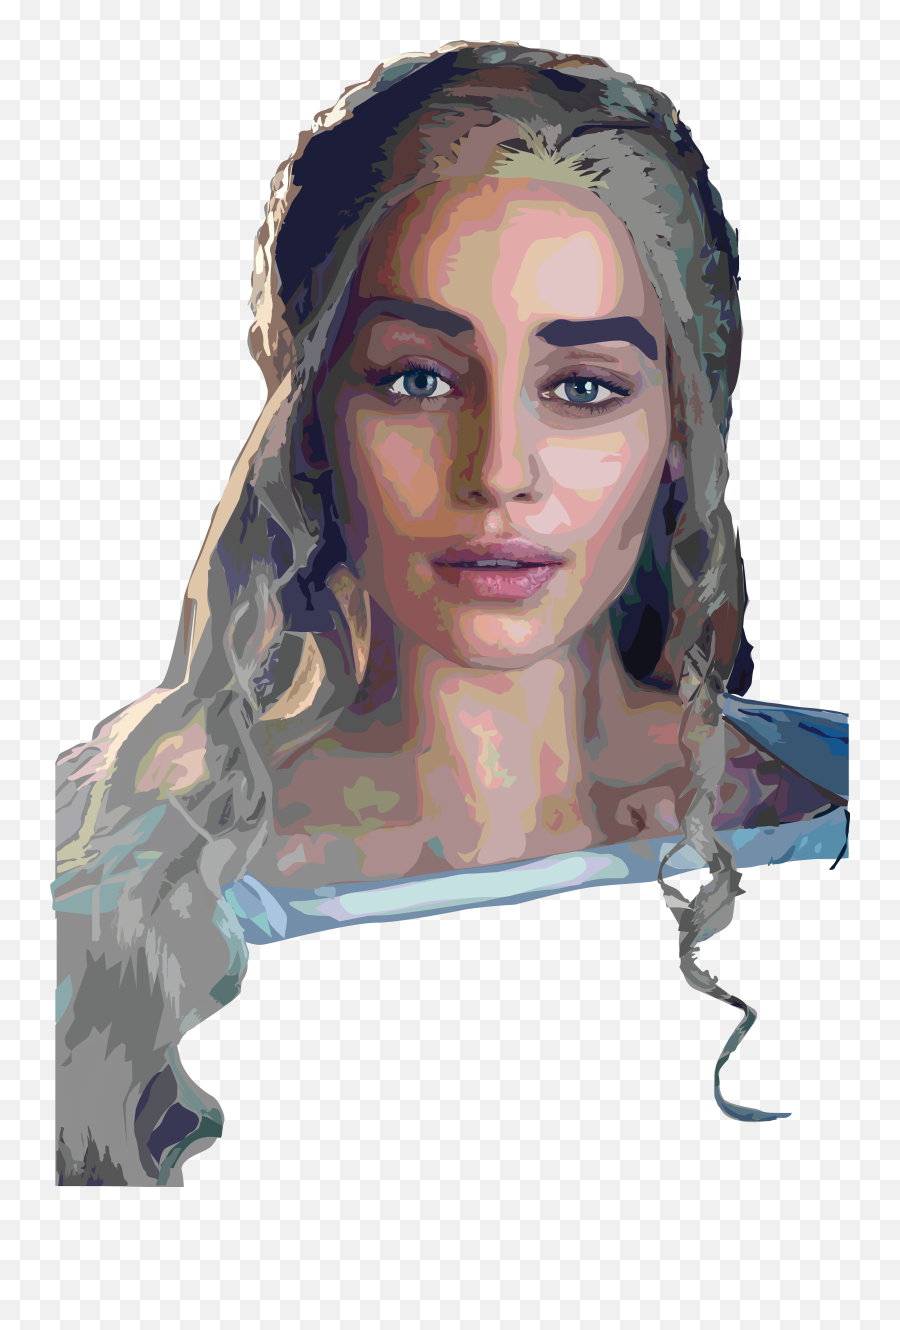 Rhaegar Targaryen Projects Photos Videos Logos - Daenerys Targaryen Png,Emilia Clarke Icon